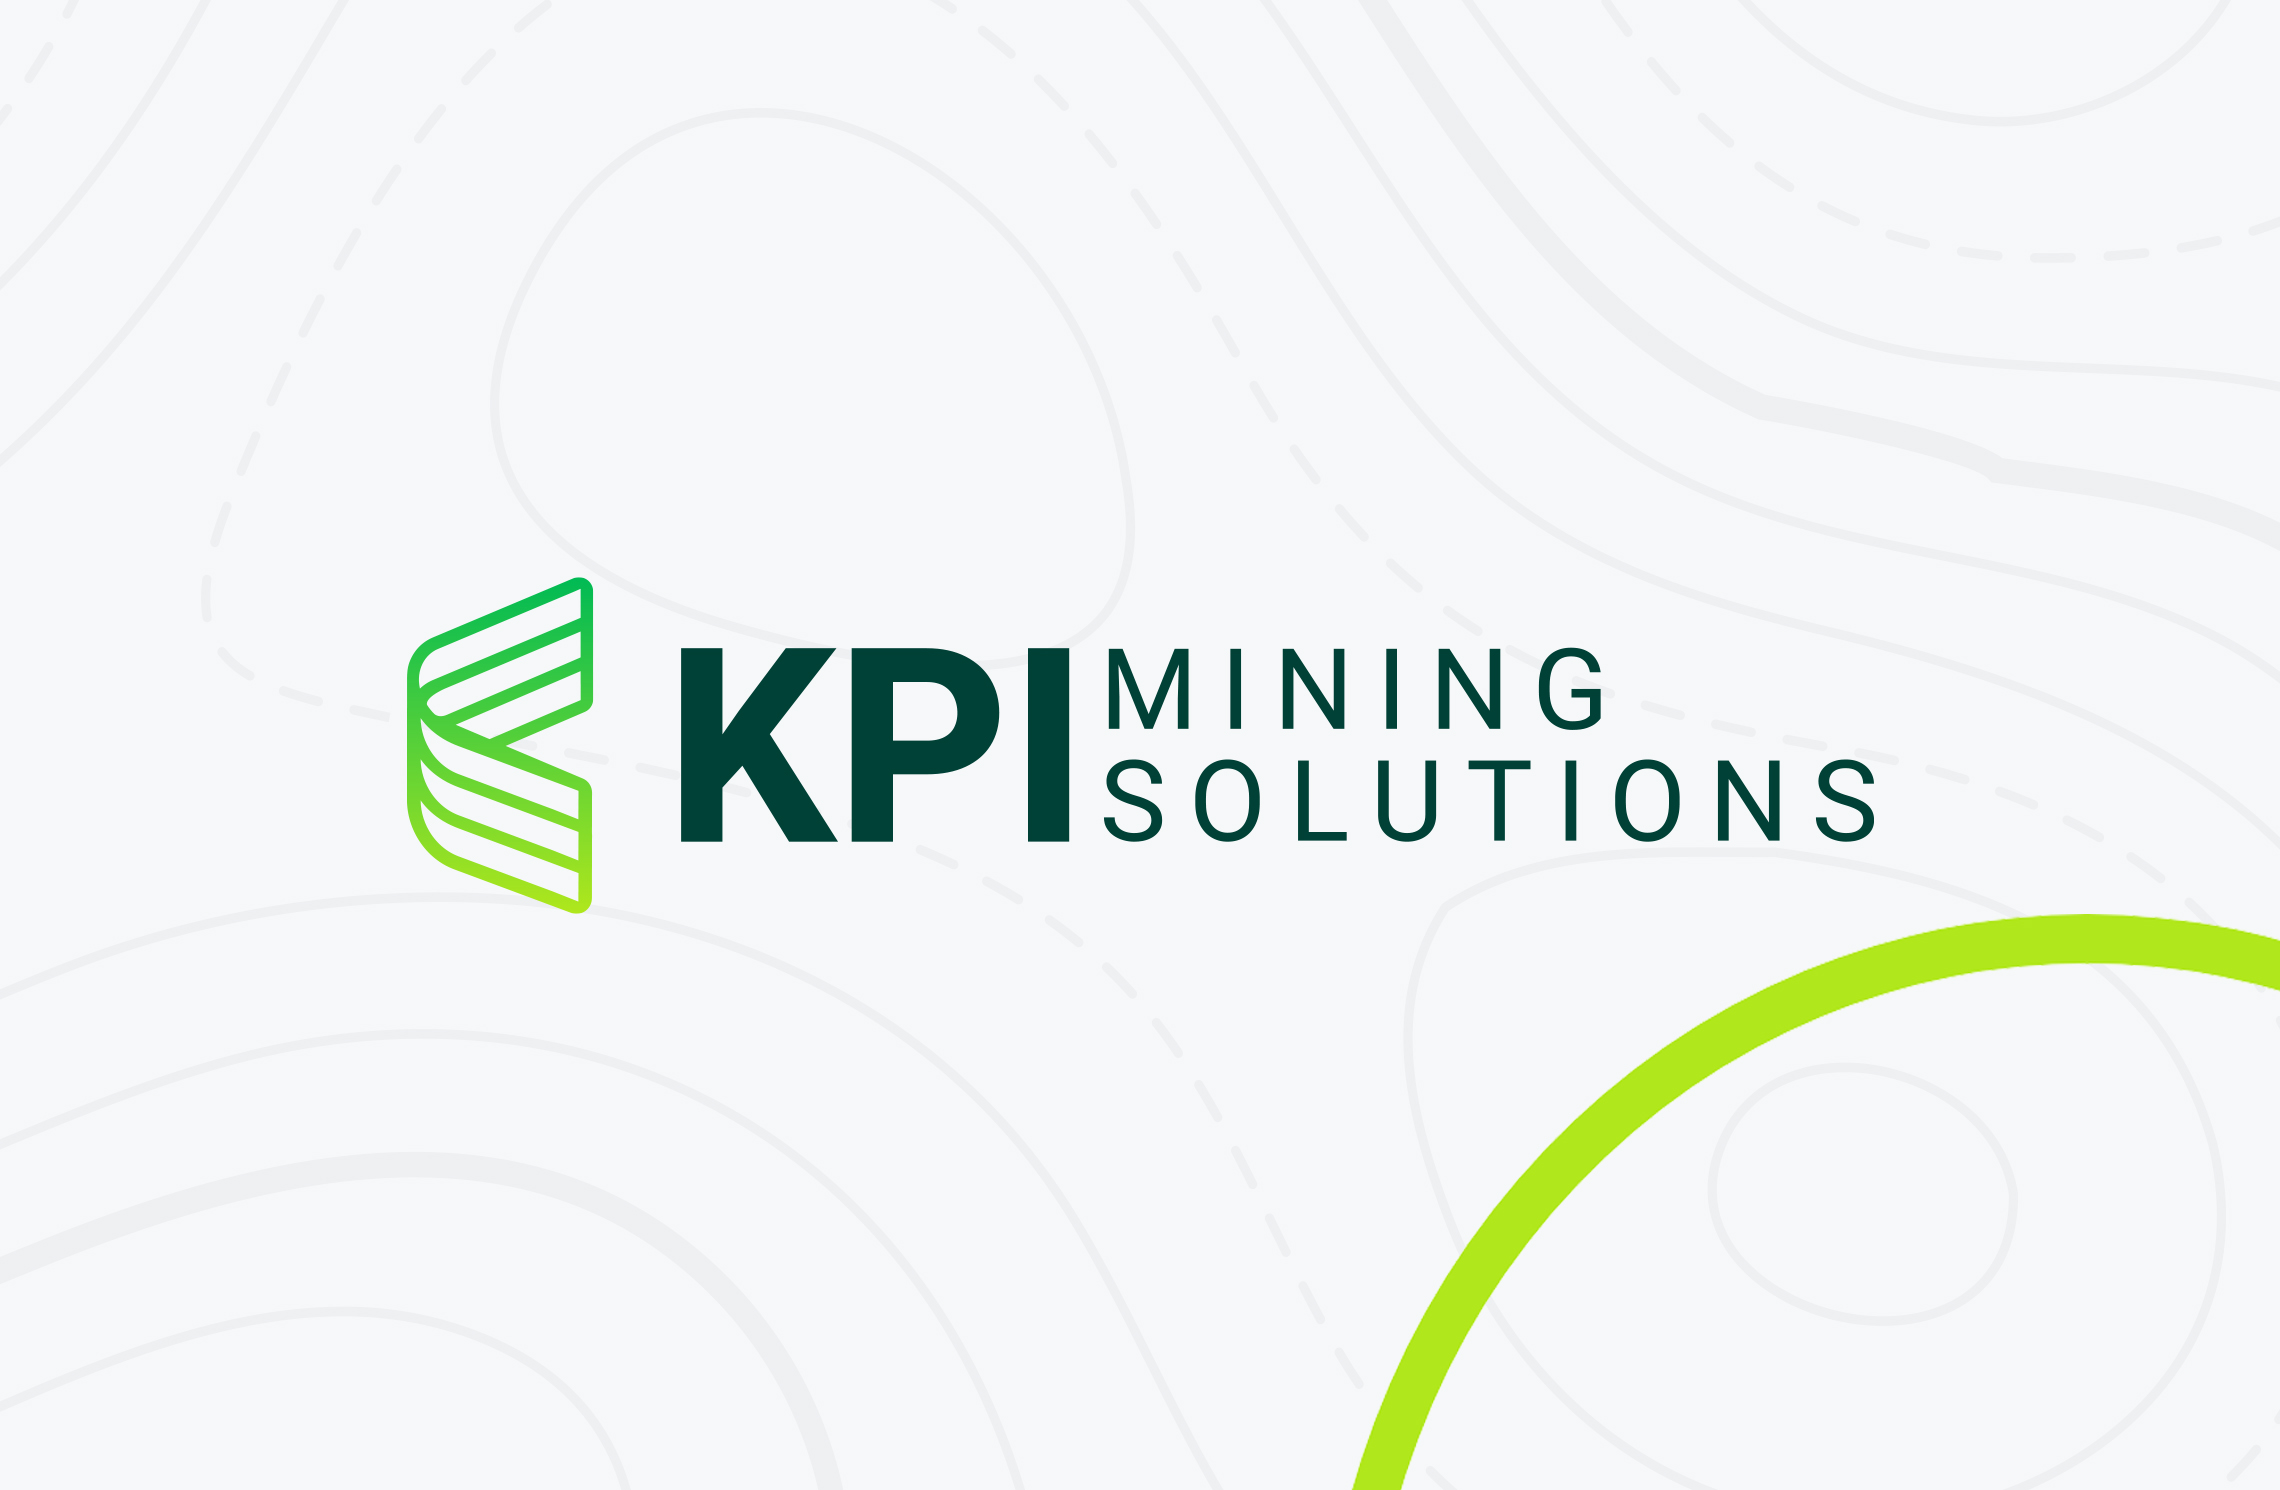 KPI Mining Solutions